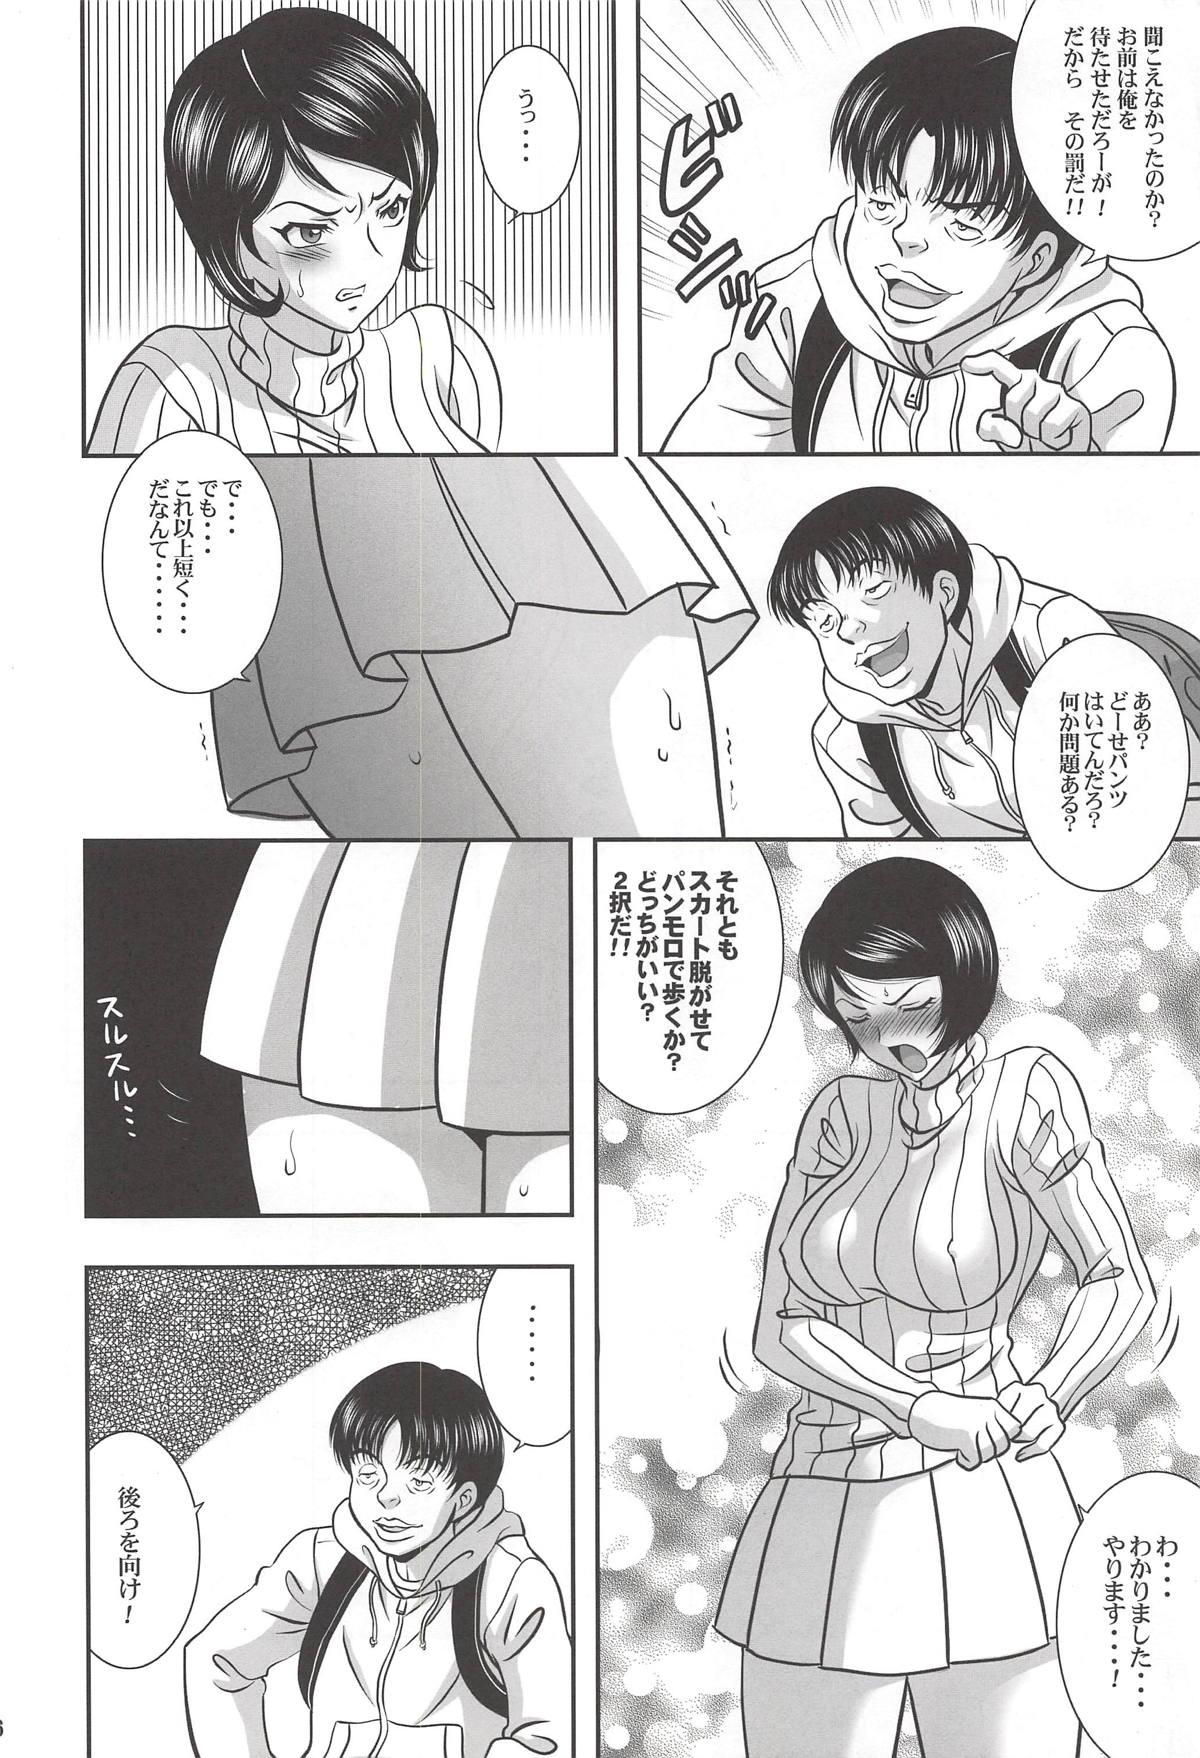 Marido ISHIZAWA 05 - Bakuman Boss - Page 5